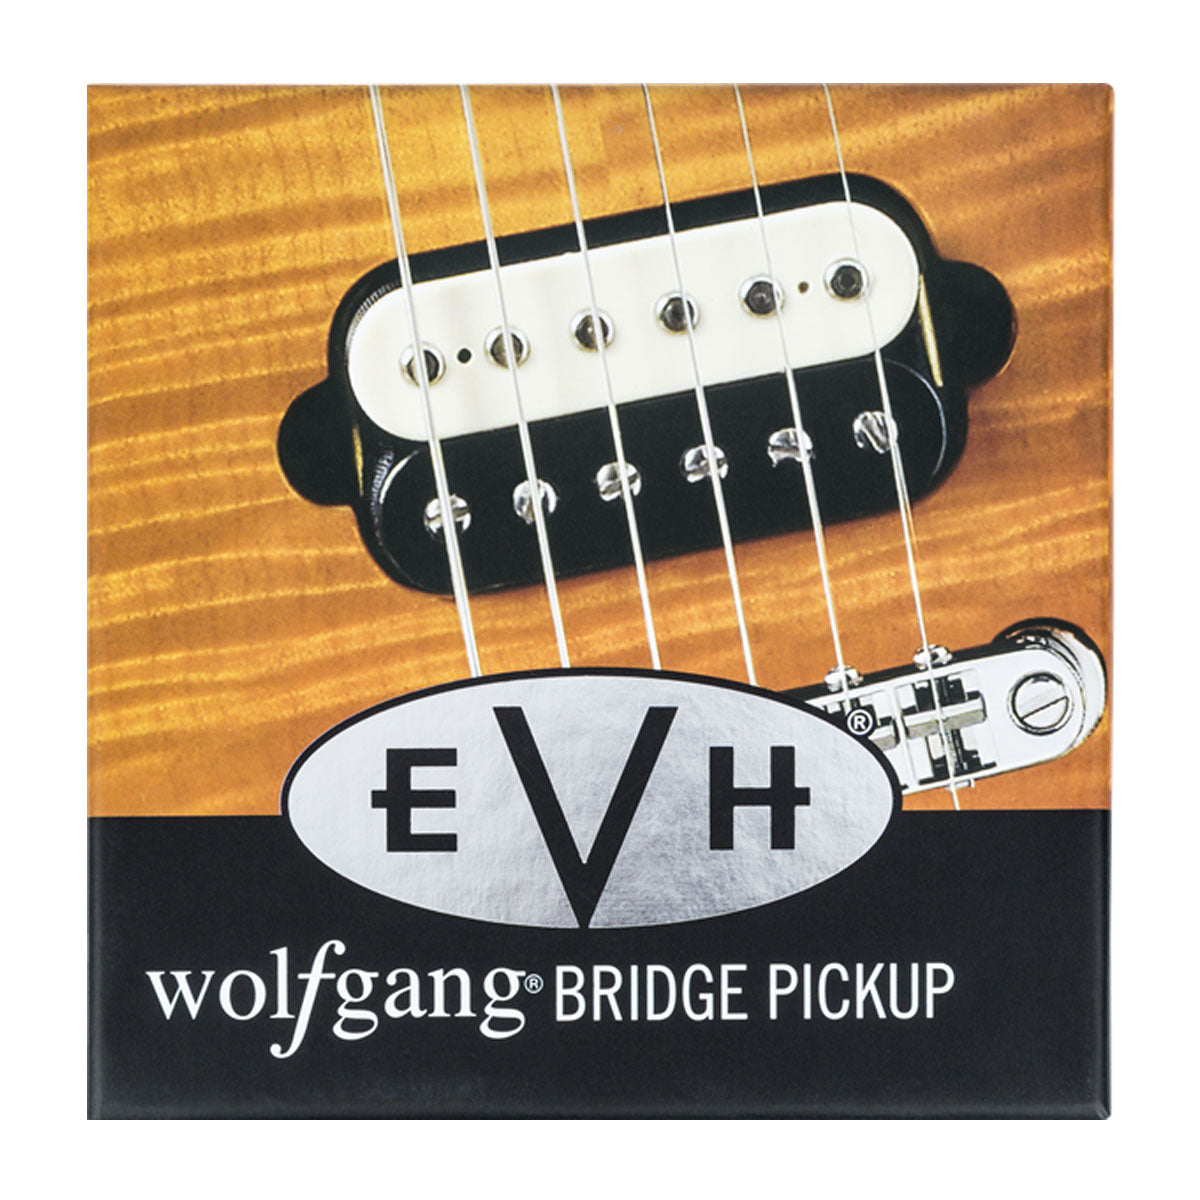 EVH Wolfgang Bridge Pickup, Black & White - 0222137002